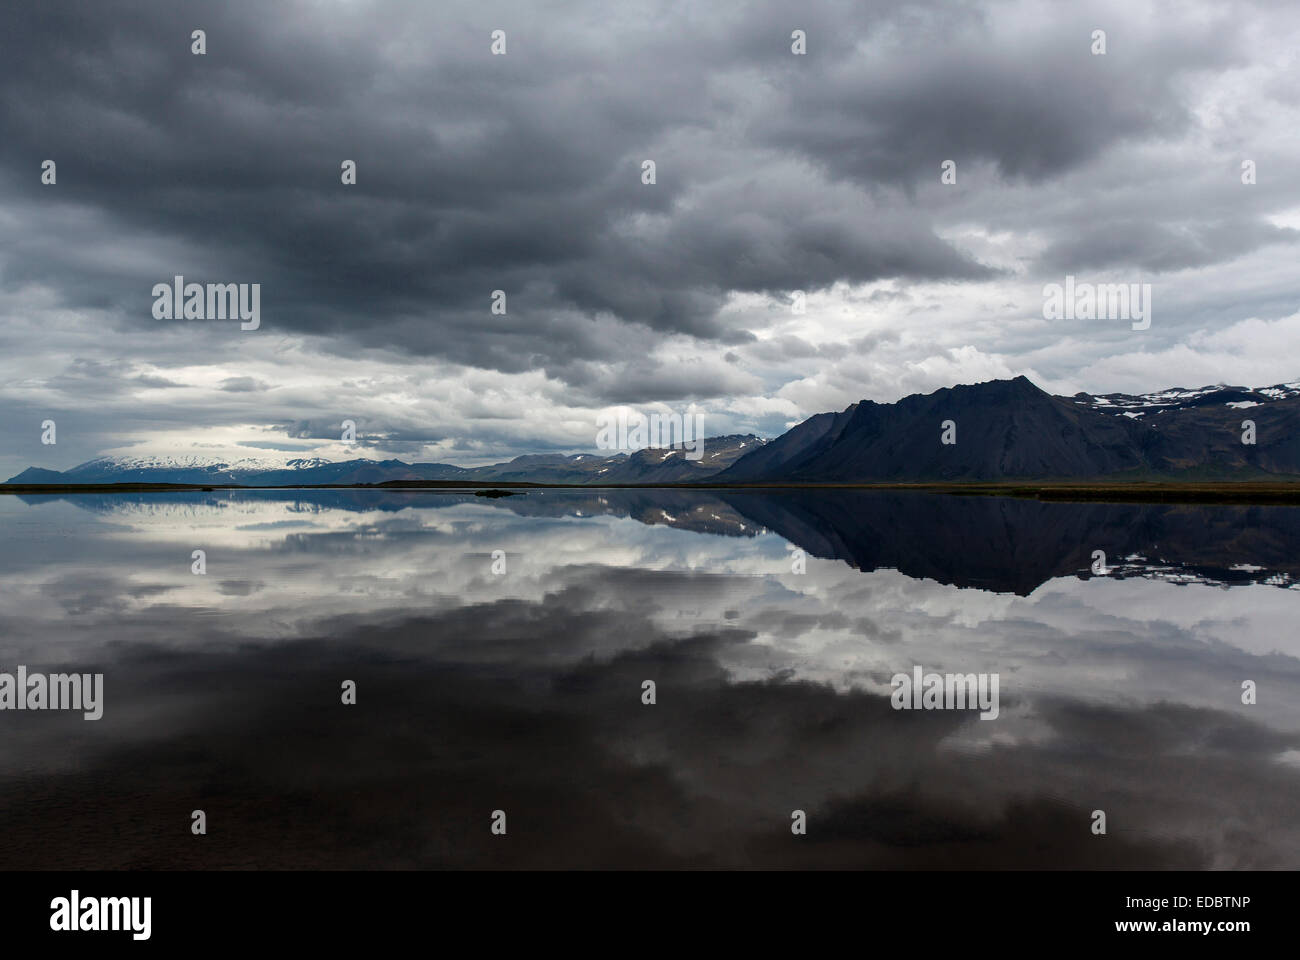 Lac, montagne à theback, des nuages sombres se reflètent dans l'eau, à proximité de Gardar, péninsule de Snæfellsnes, l'Islande Banque D'Images